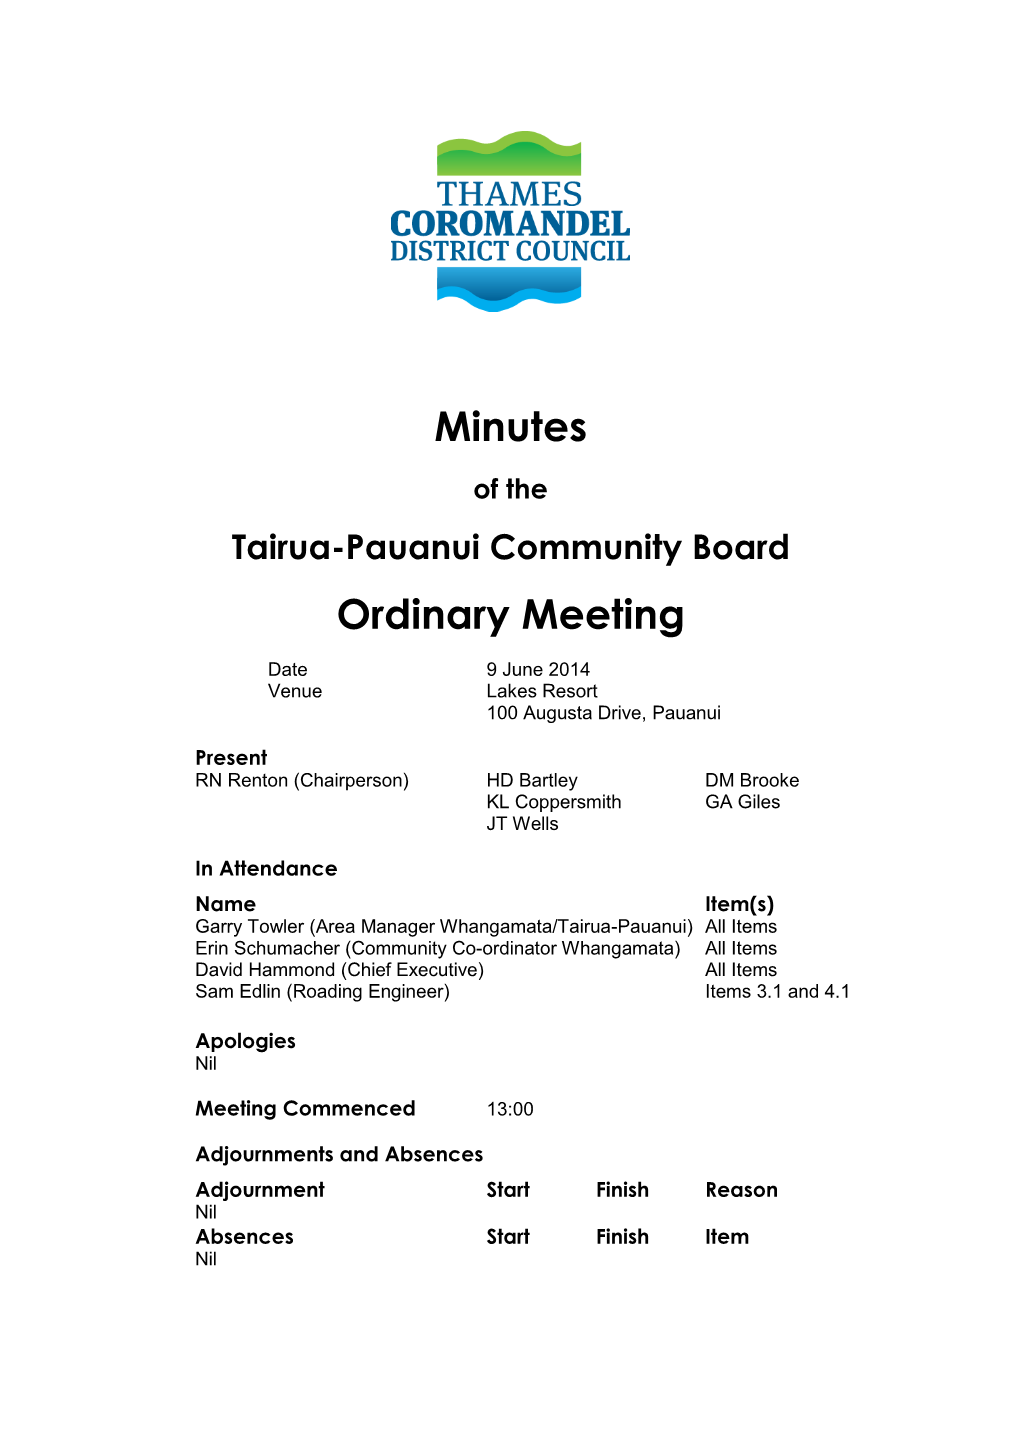 UNCONFIRMED 9 June 2014 Tairua-Pauanui Community Board